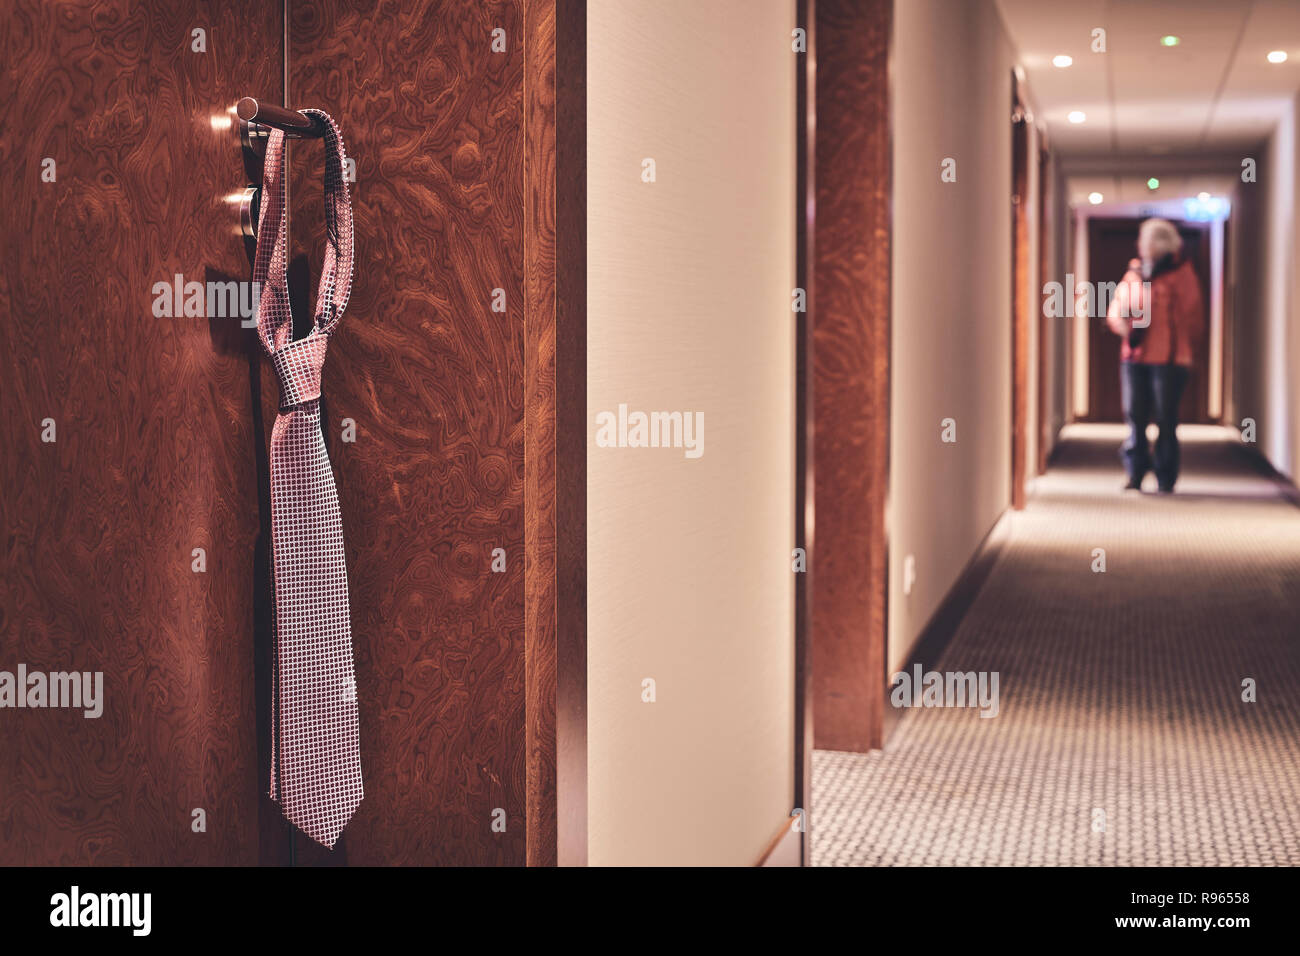 Tie accroché sur une poignée de porte fermée de l'hôtel, ne pas déranger signe informel rétro, harmonisation des couleurs appliquées, selective focus. Banque D'Images